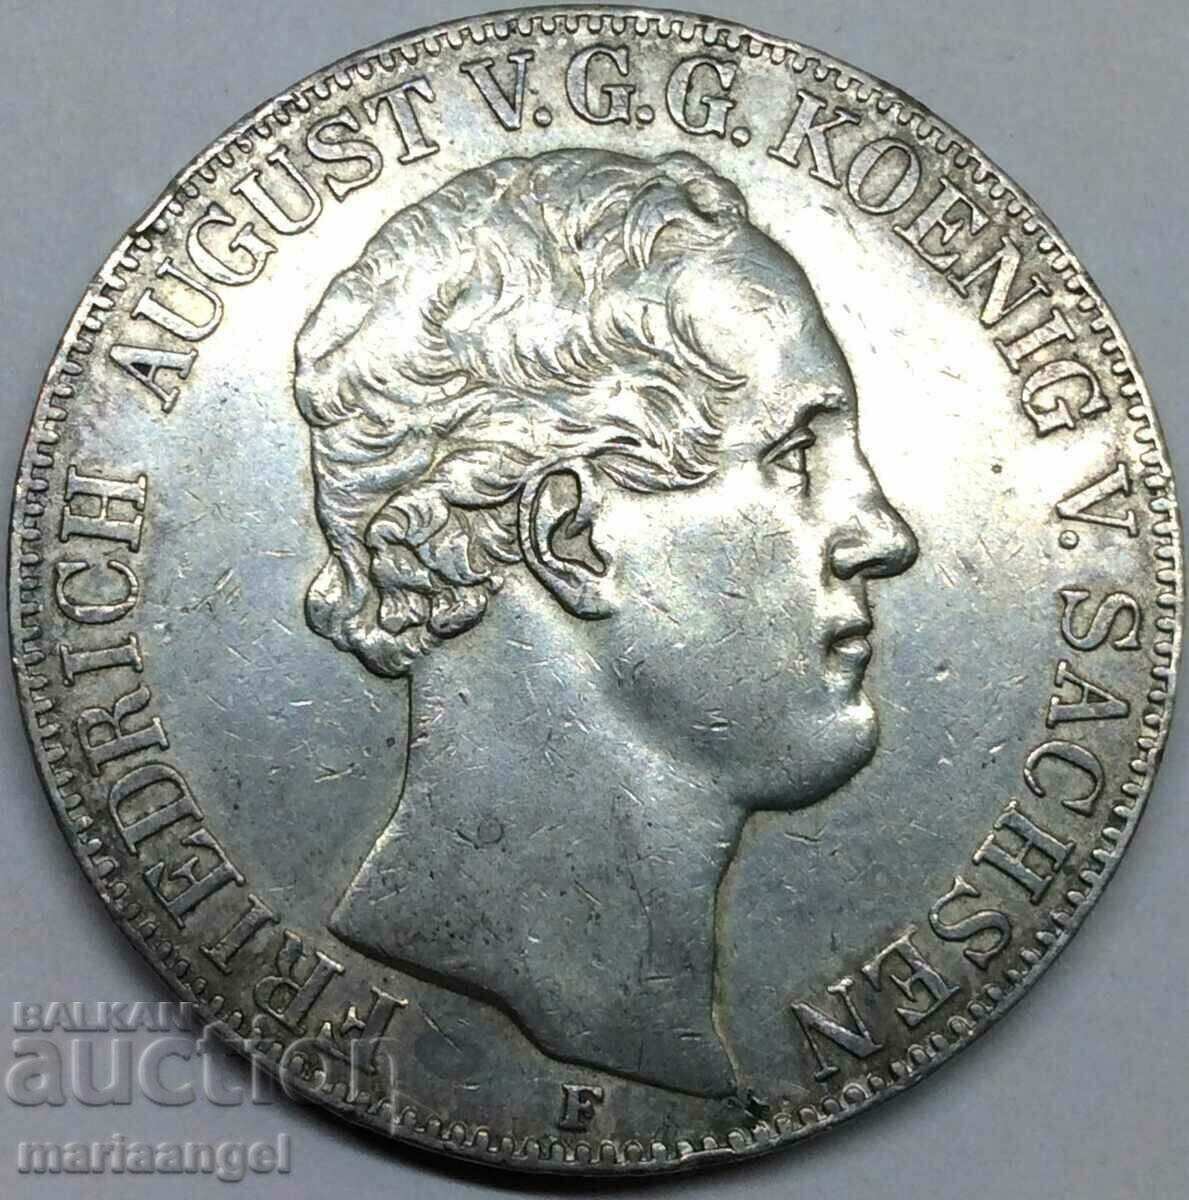 Double Thaler 1854 (36,97g) Γερμανία Saxony-Albertine ασήμι